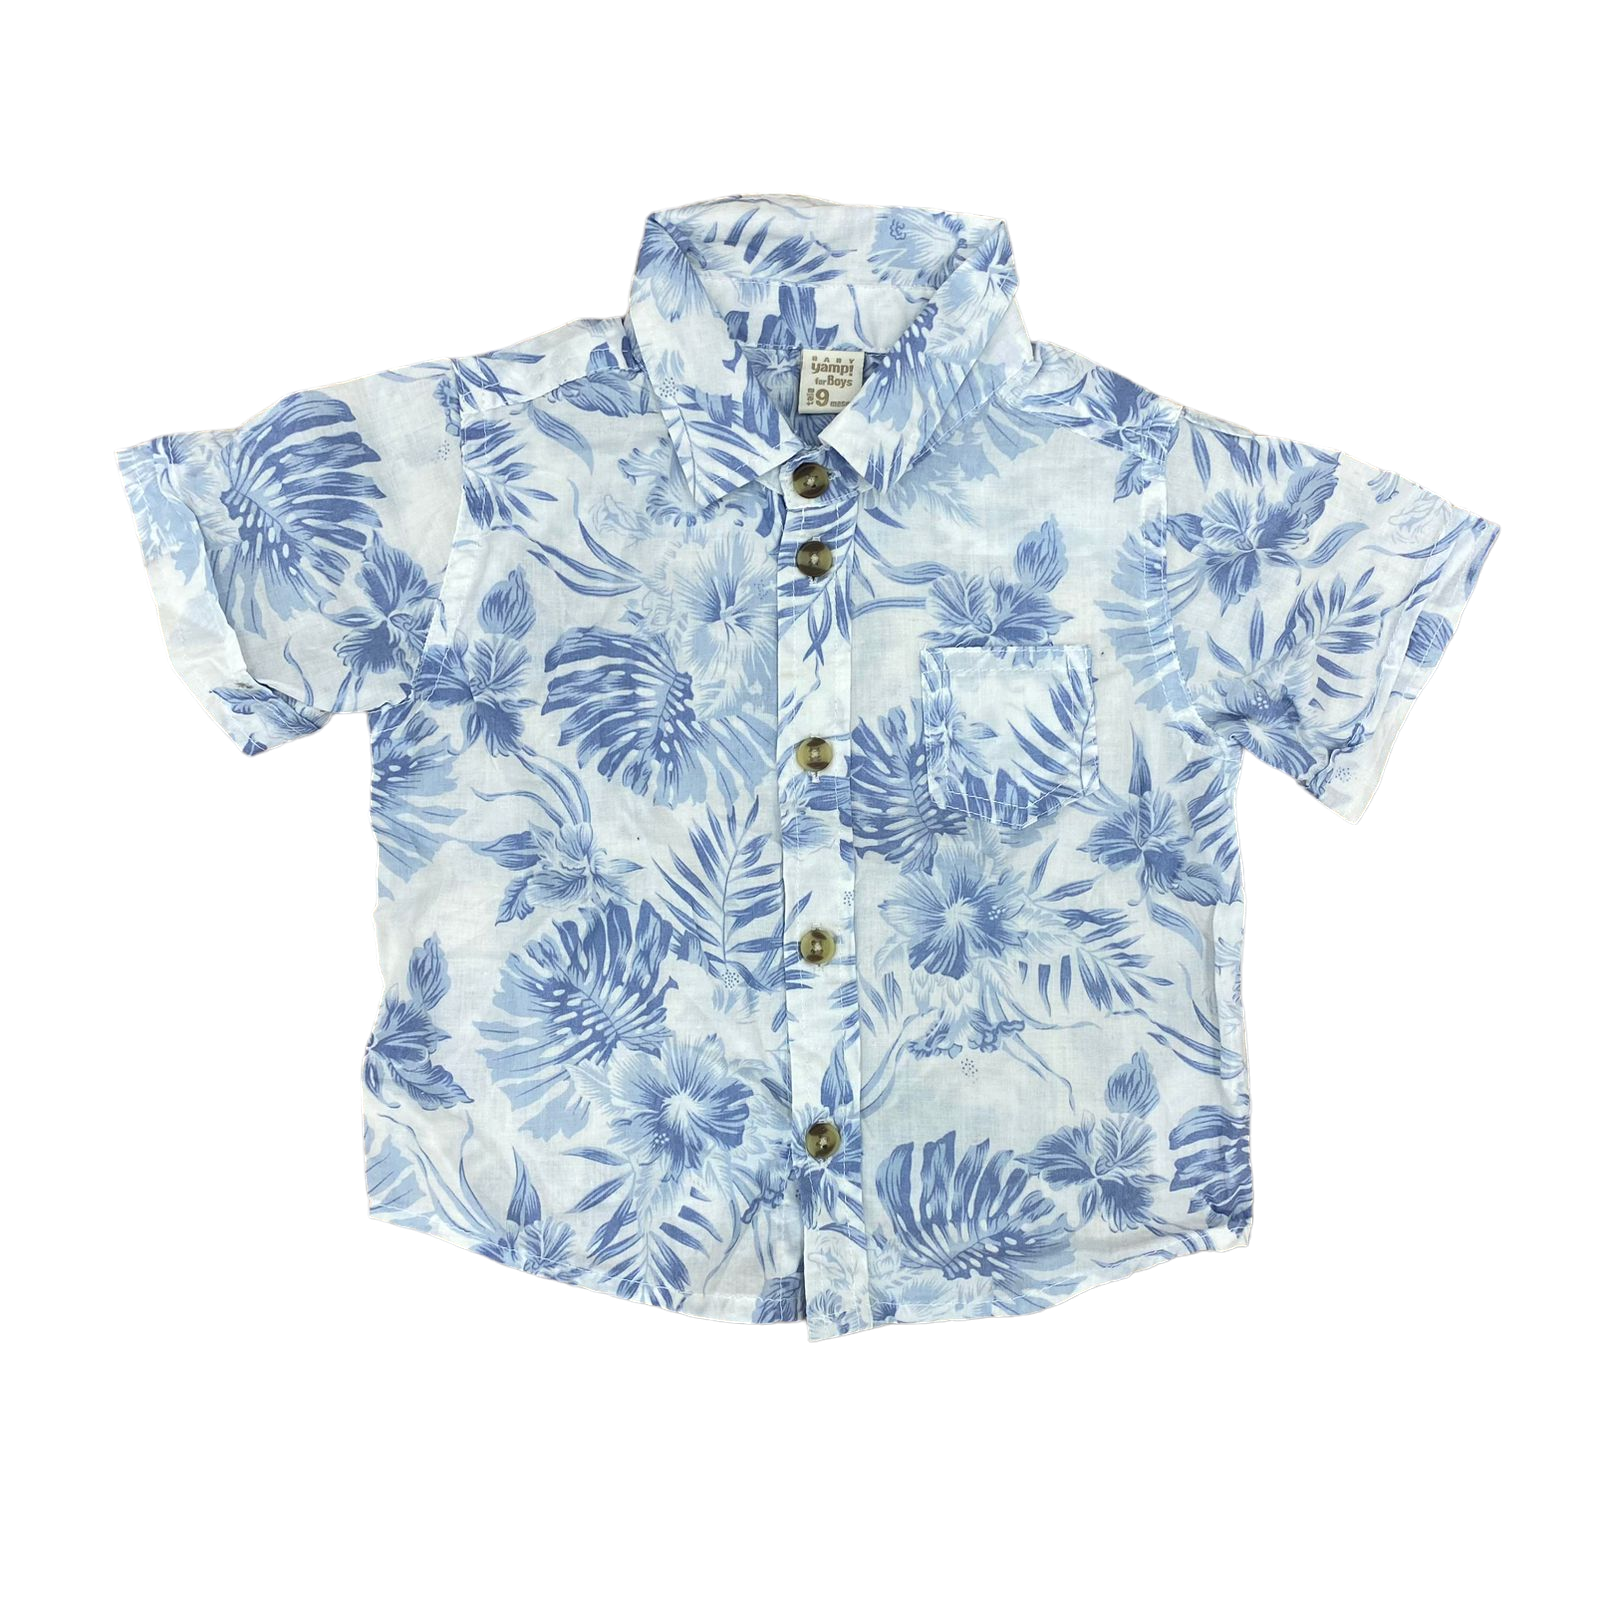 Camisa blanca con diseño de hojas azules